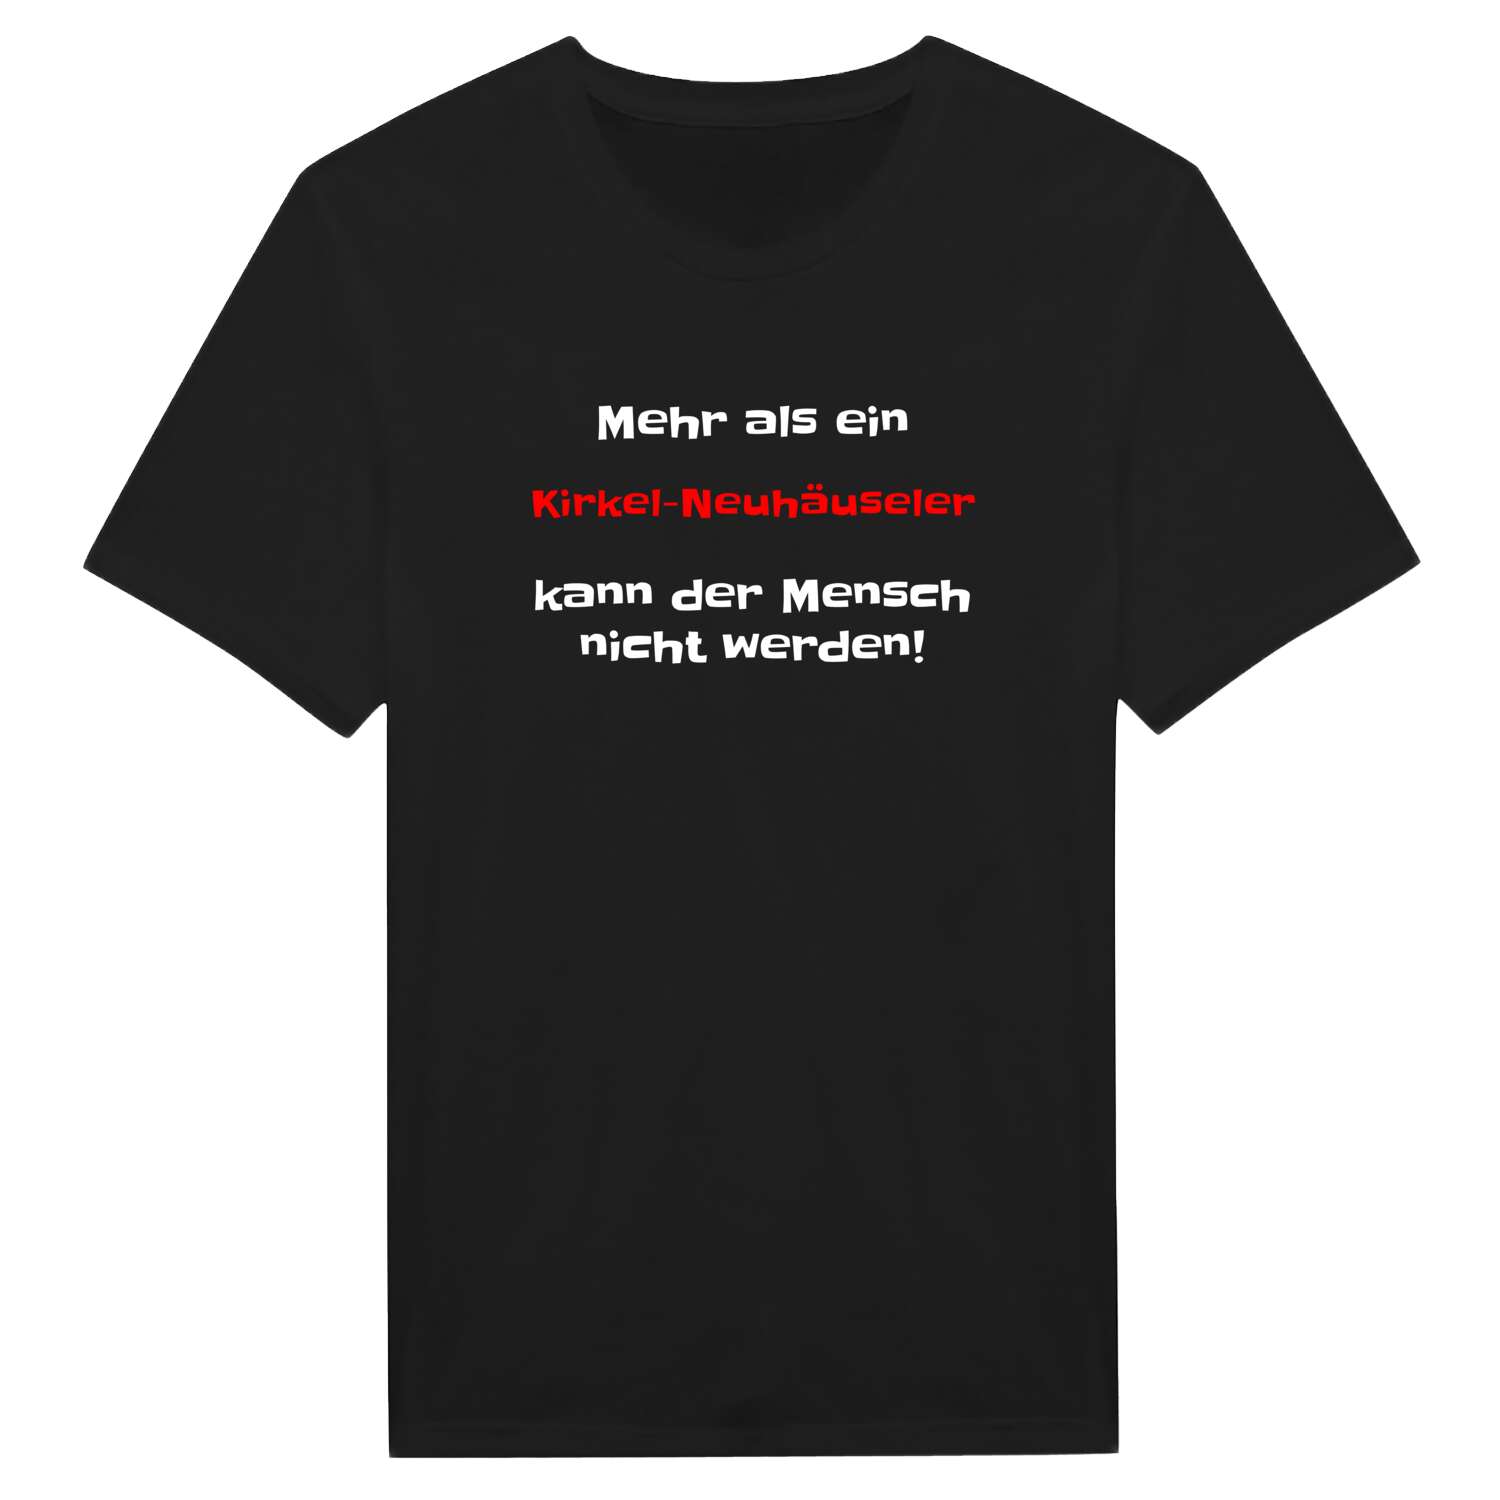 Kirkel-Neuhäusel T-Shirt »Mehr als ein«